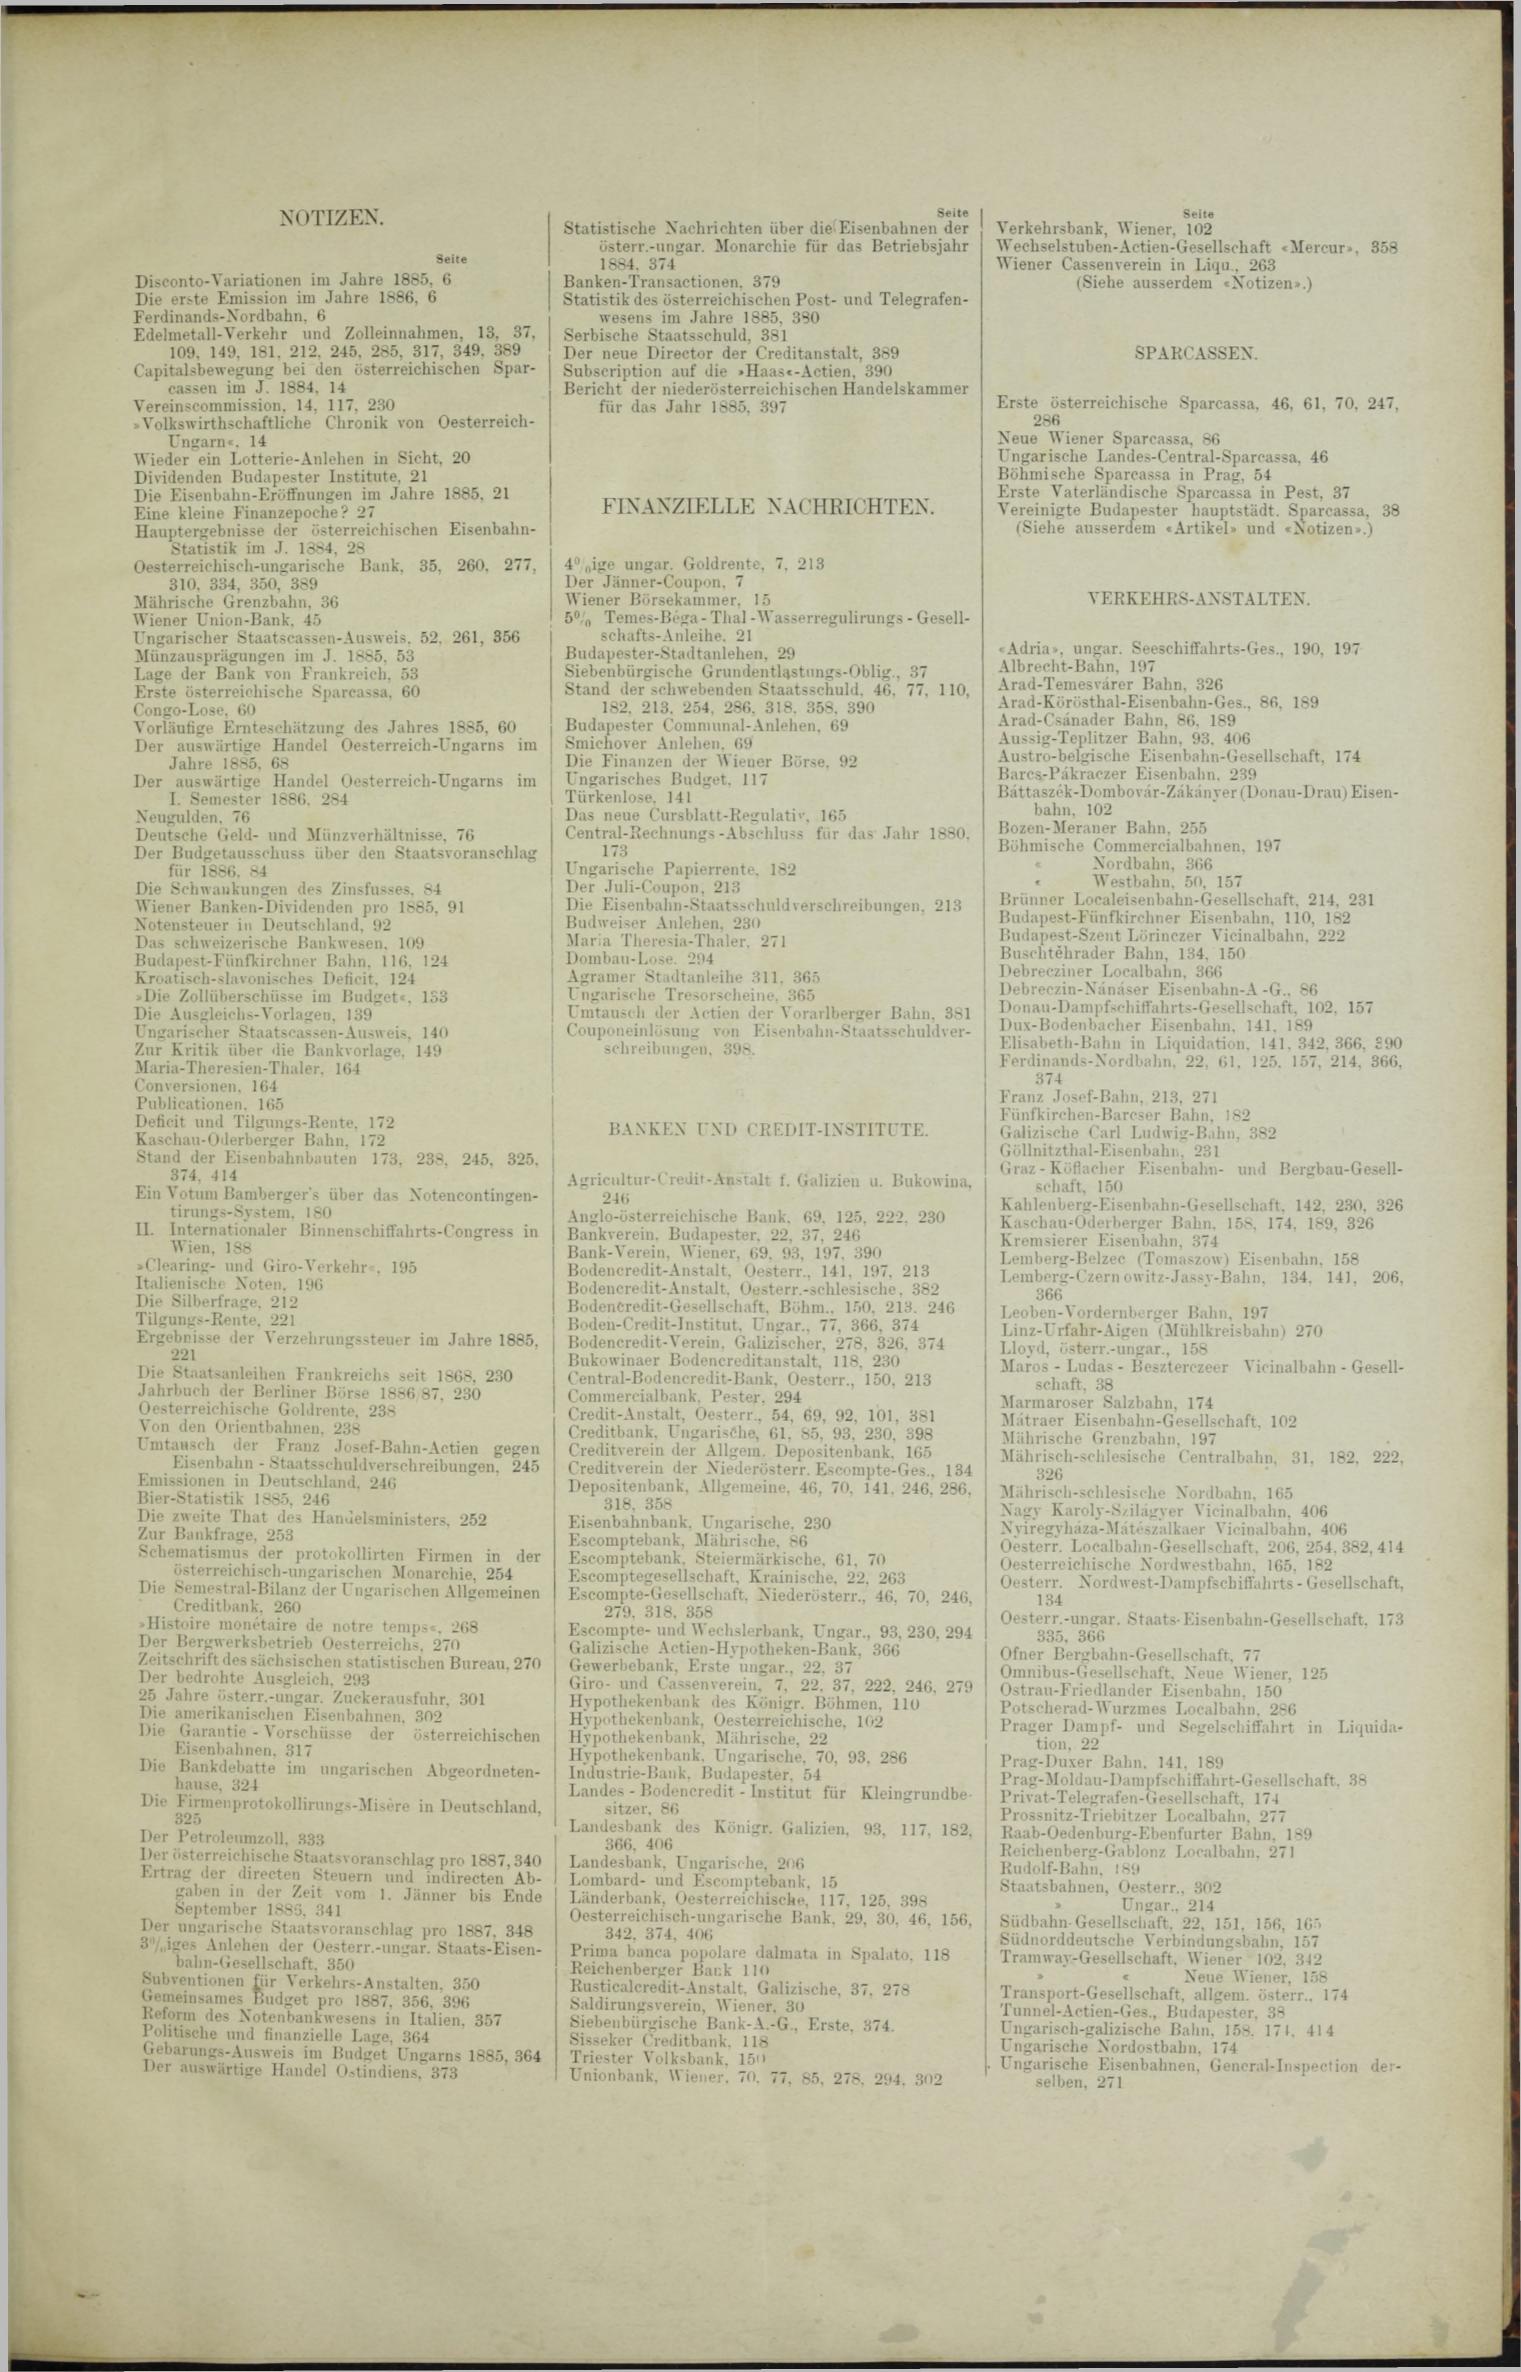 Der Tresor 20.05.1886 - Seite 11